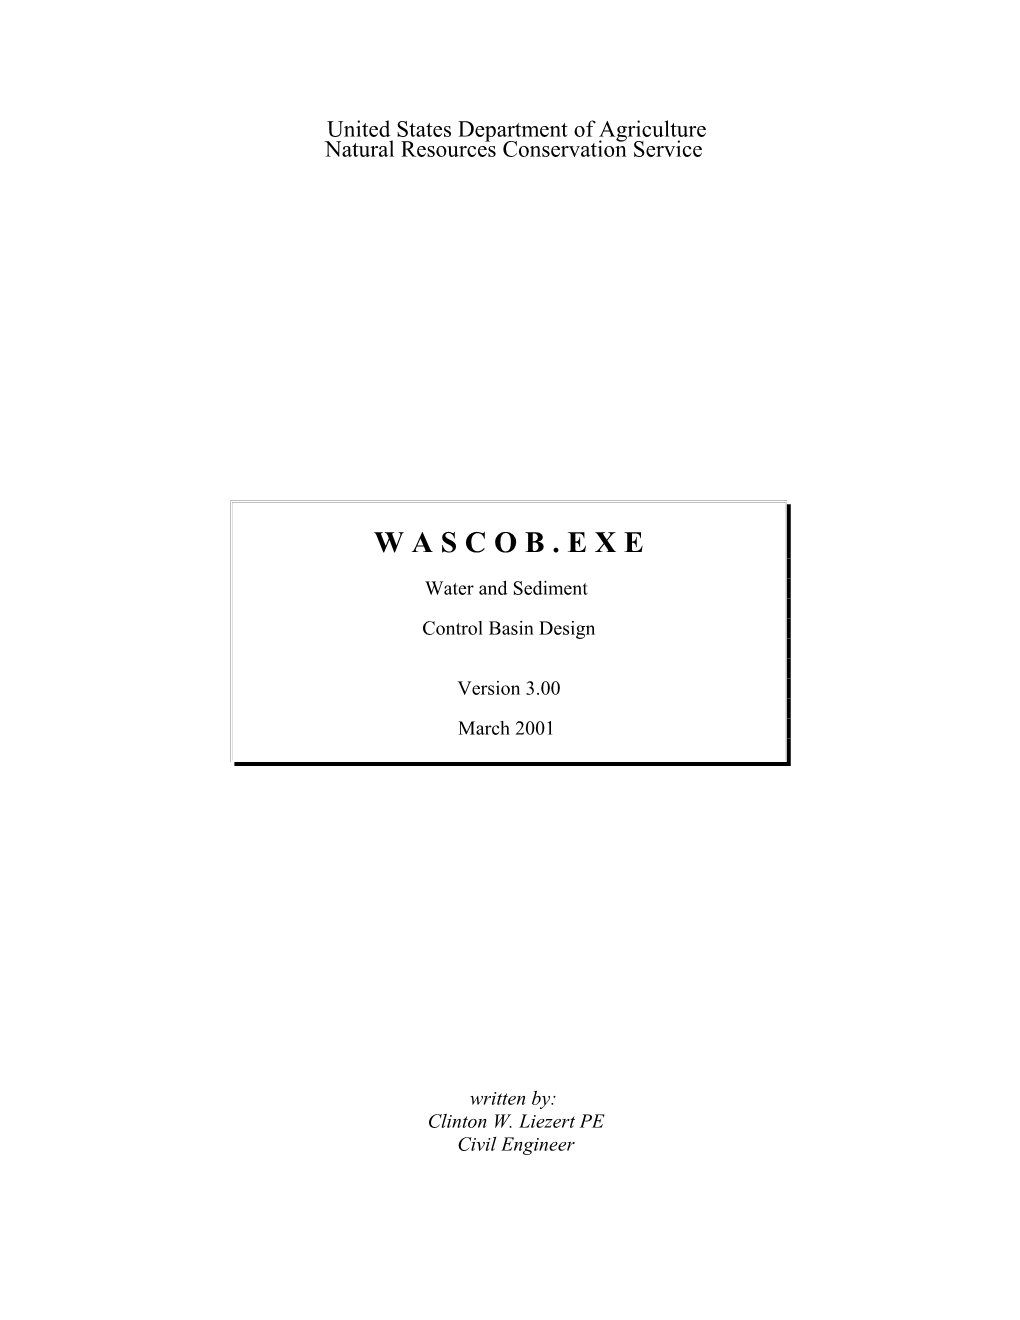 WASCOB User's Guide